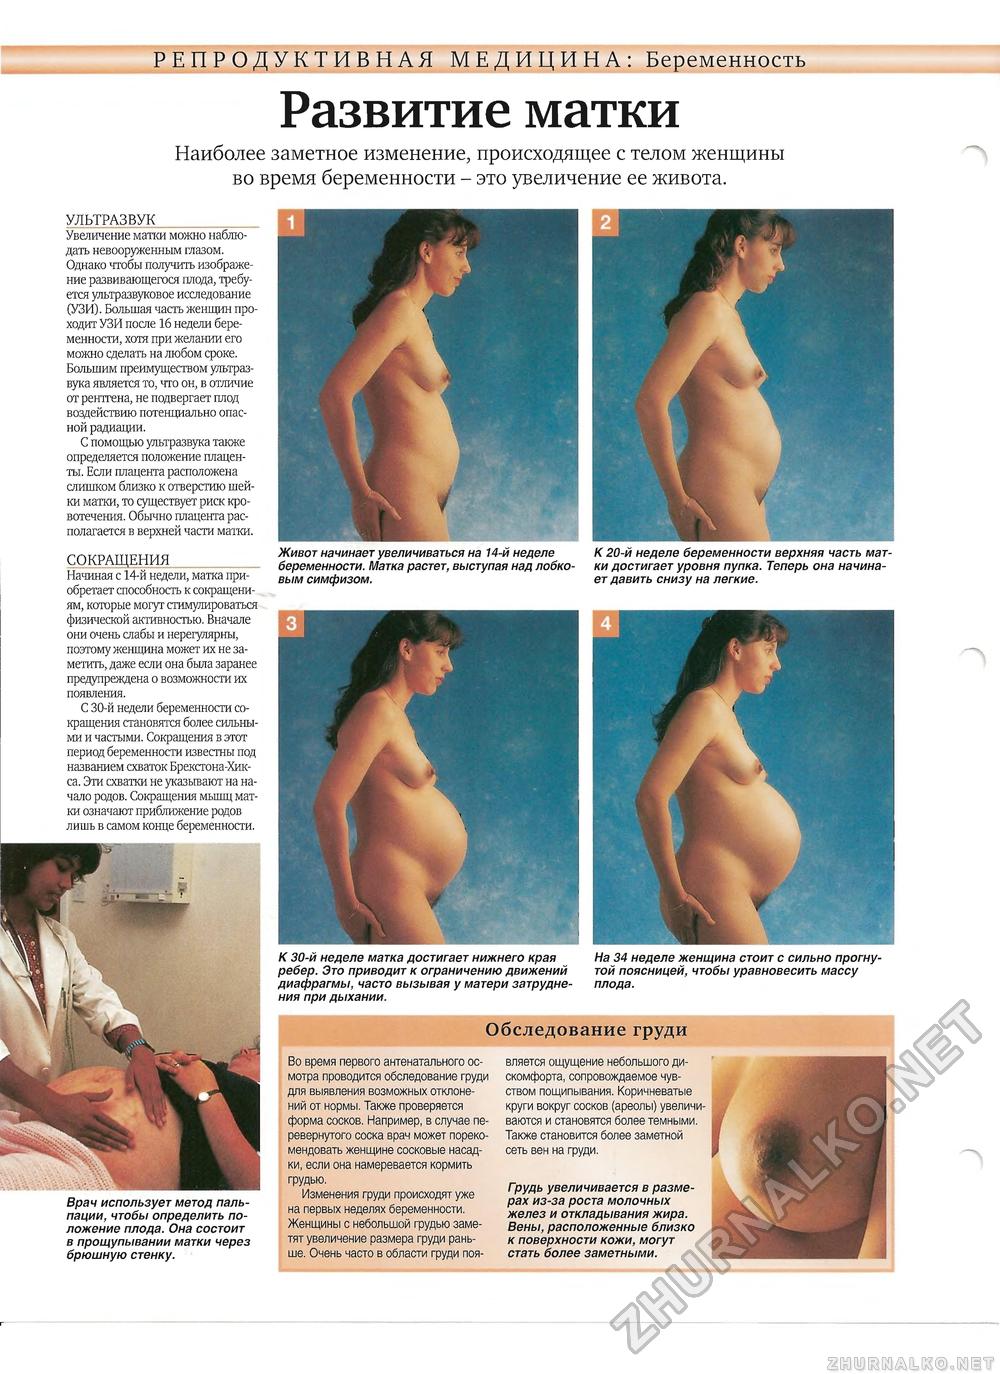 у кого как болела грудь на начальной стадии беременности фото 21